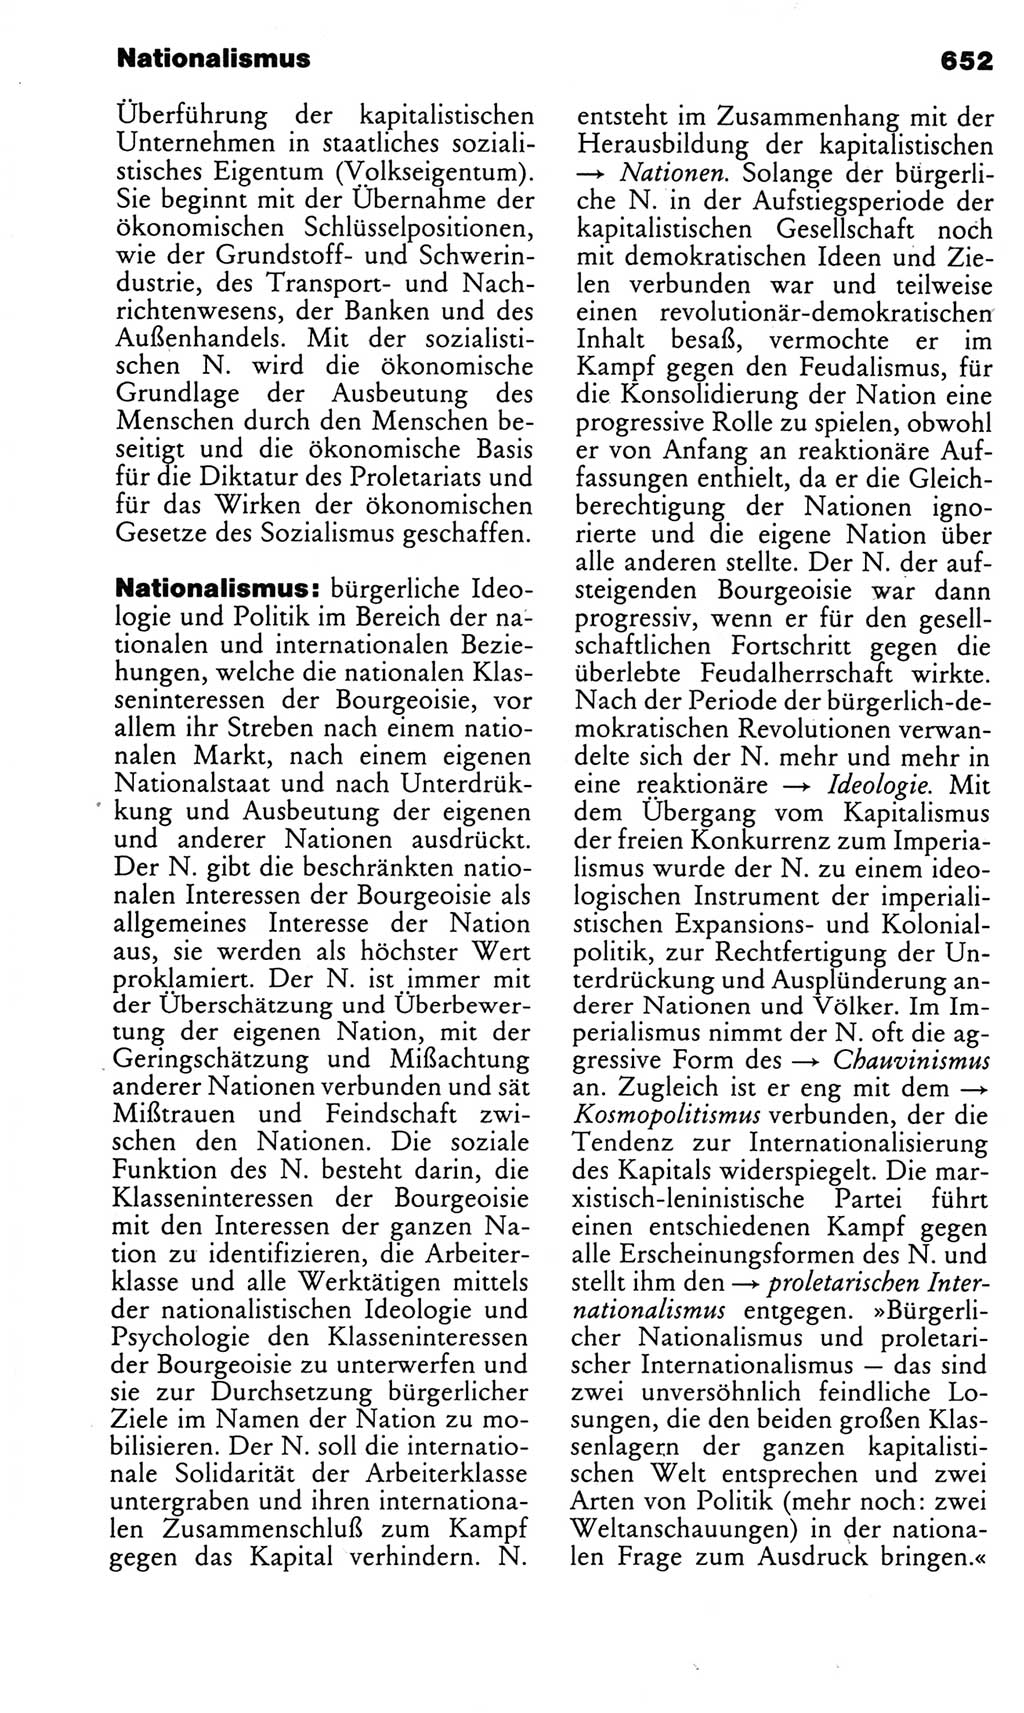 Kleines politisches Wörterbuch [Deutsche Demokratische Republik (DDR)] 1983, Seite 652 (Kl. pol. Wb. DDR 1983, S. 652)